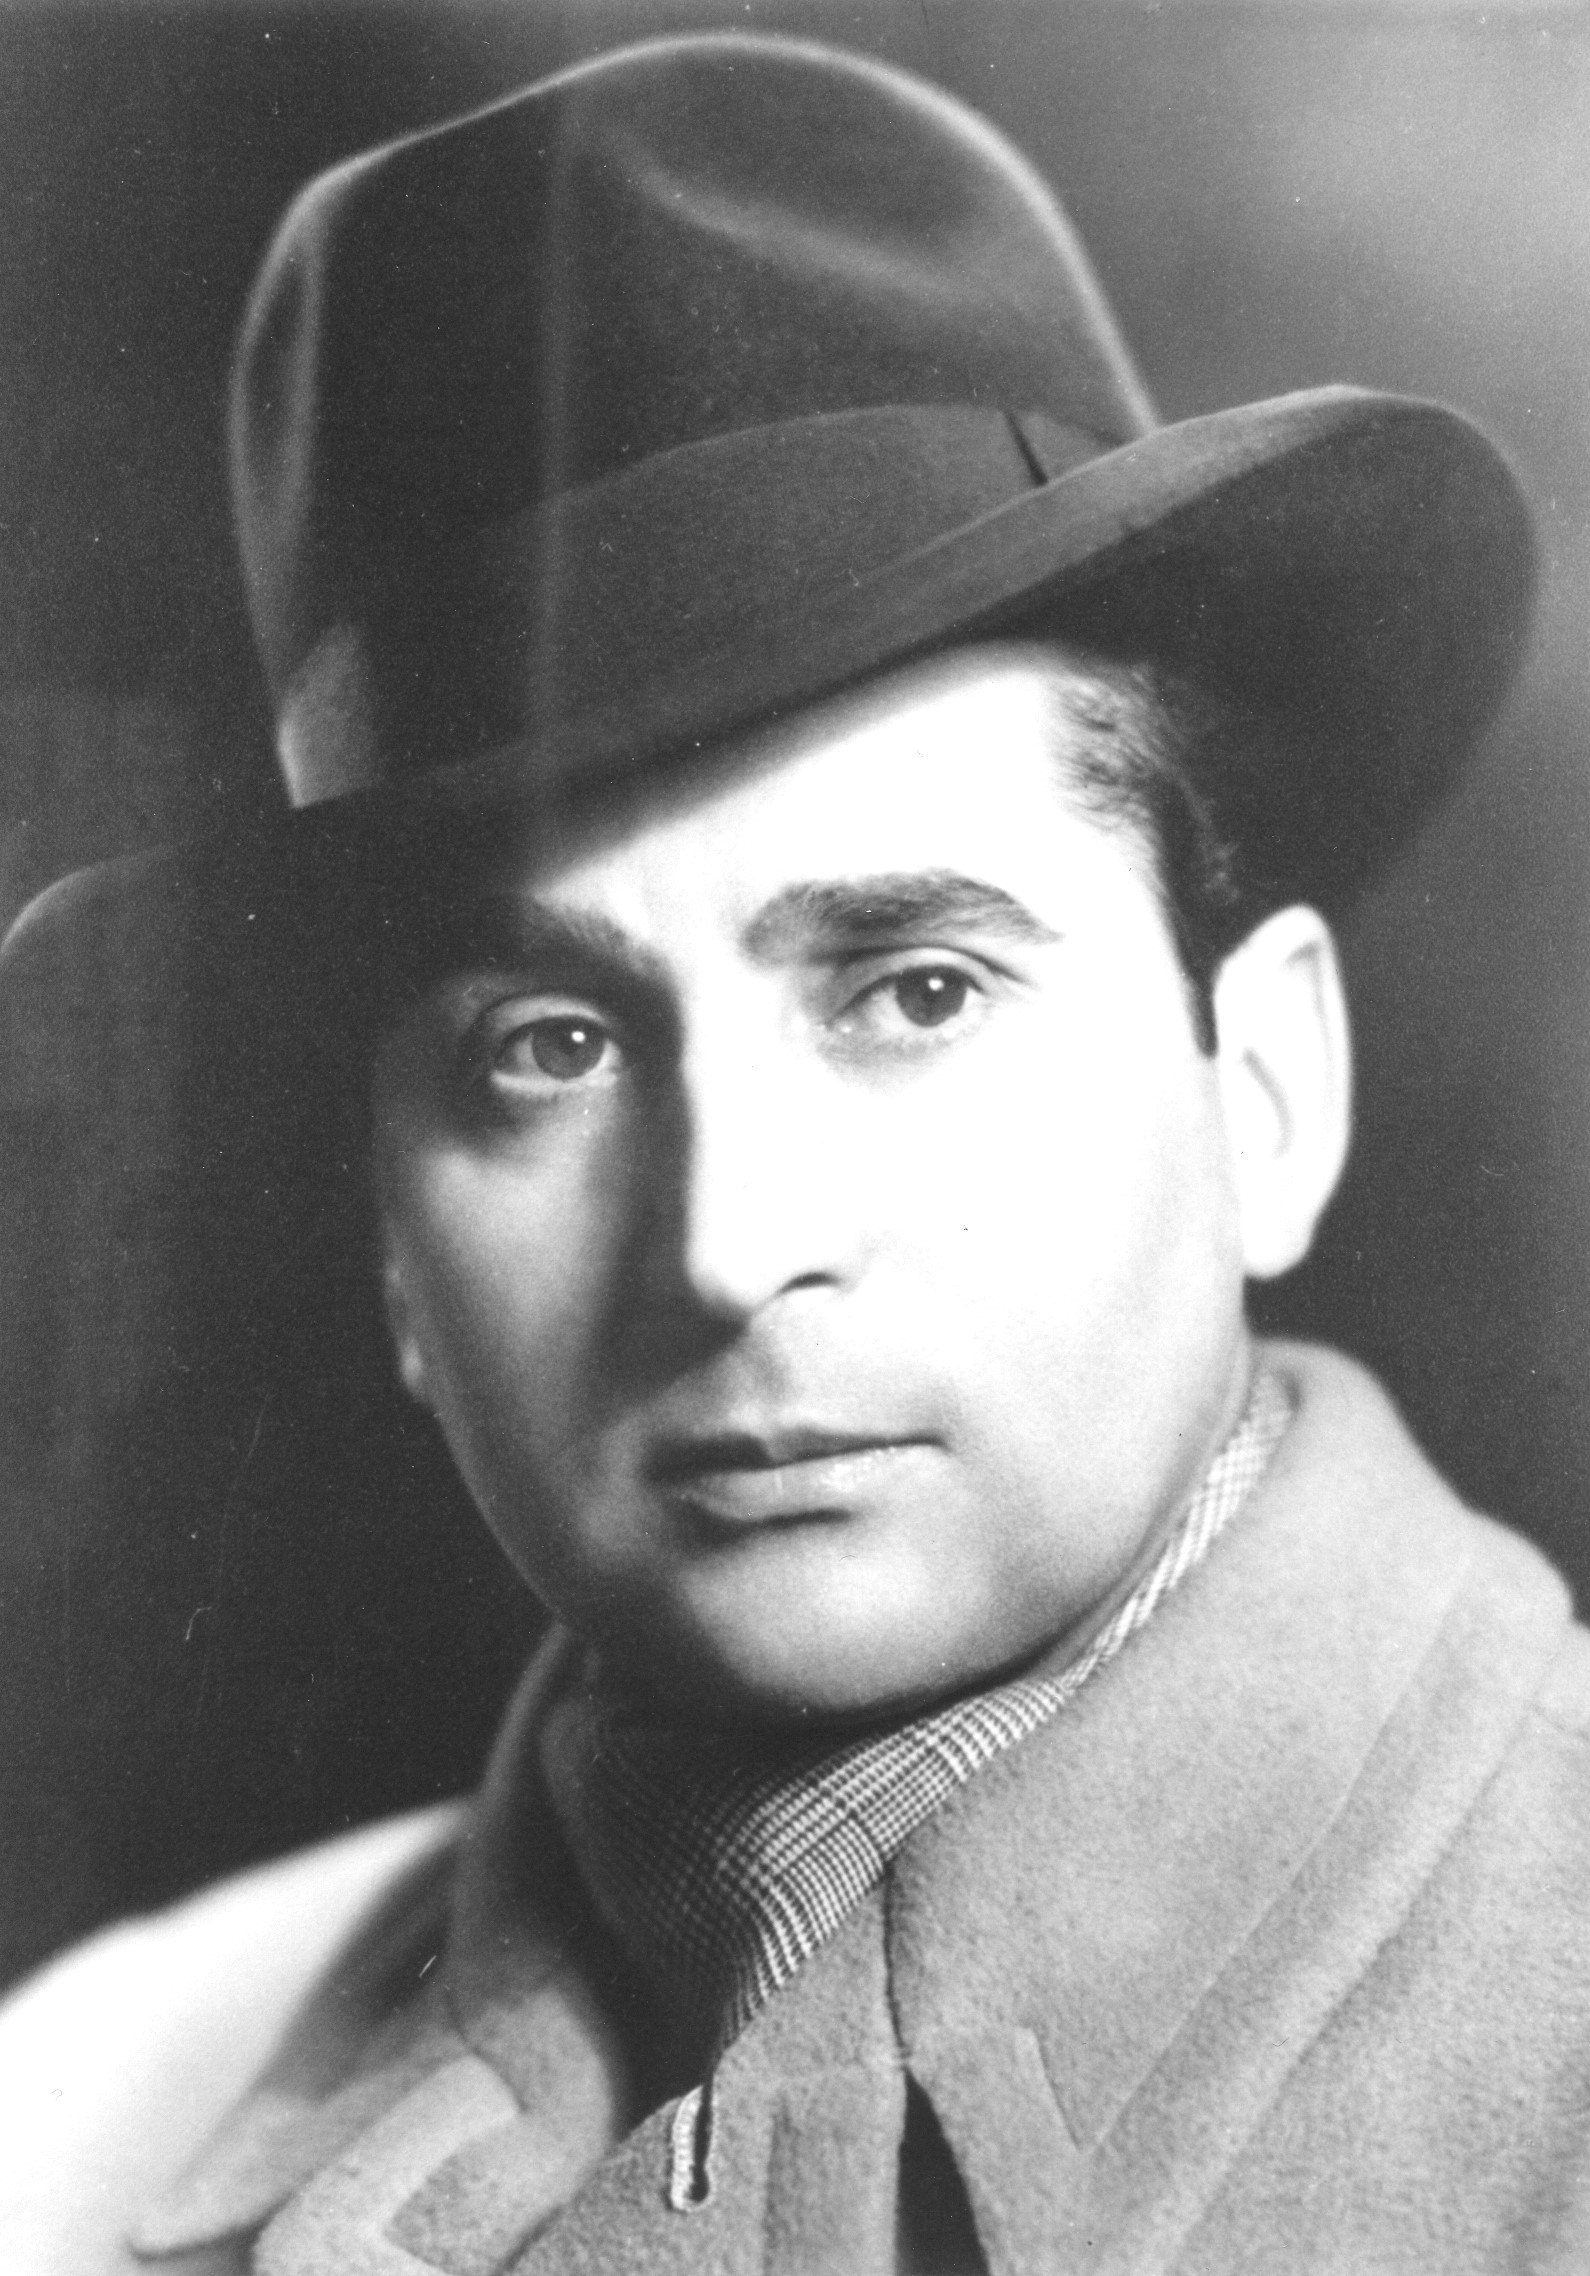 Historisches Portraitfoto von Vinzenz Rose in schwarz-weiß. Er grägt einen eleganten Hut, Schal und einen Mantel.